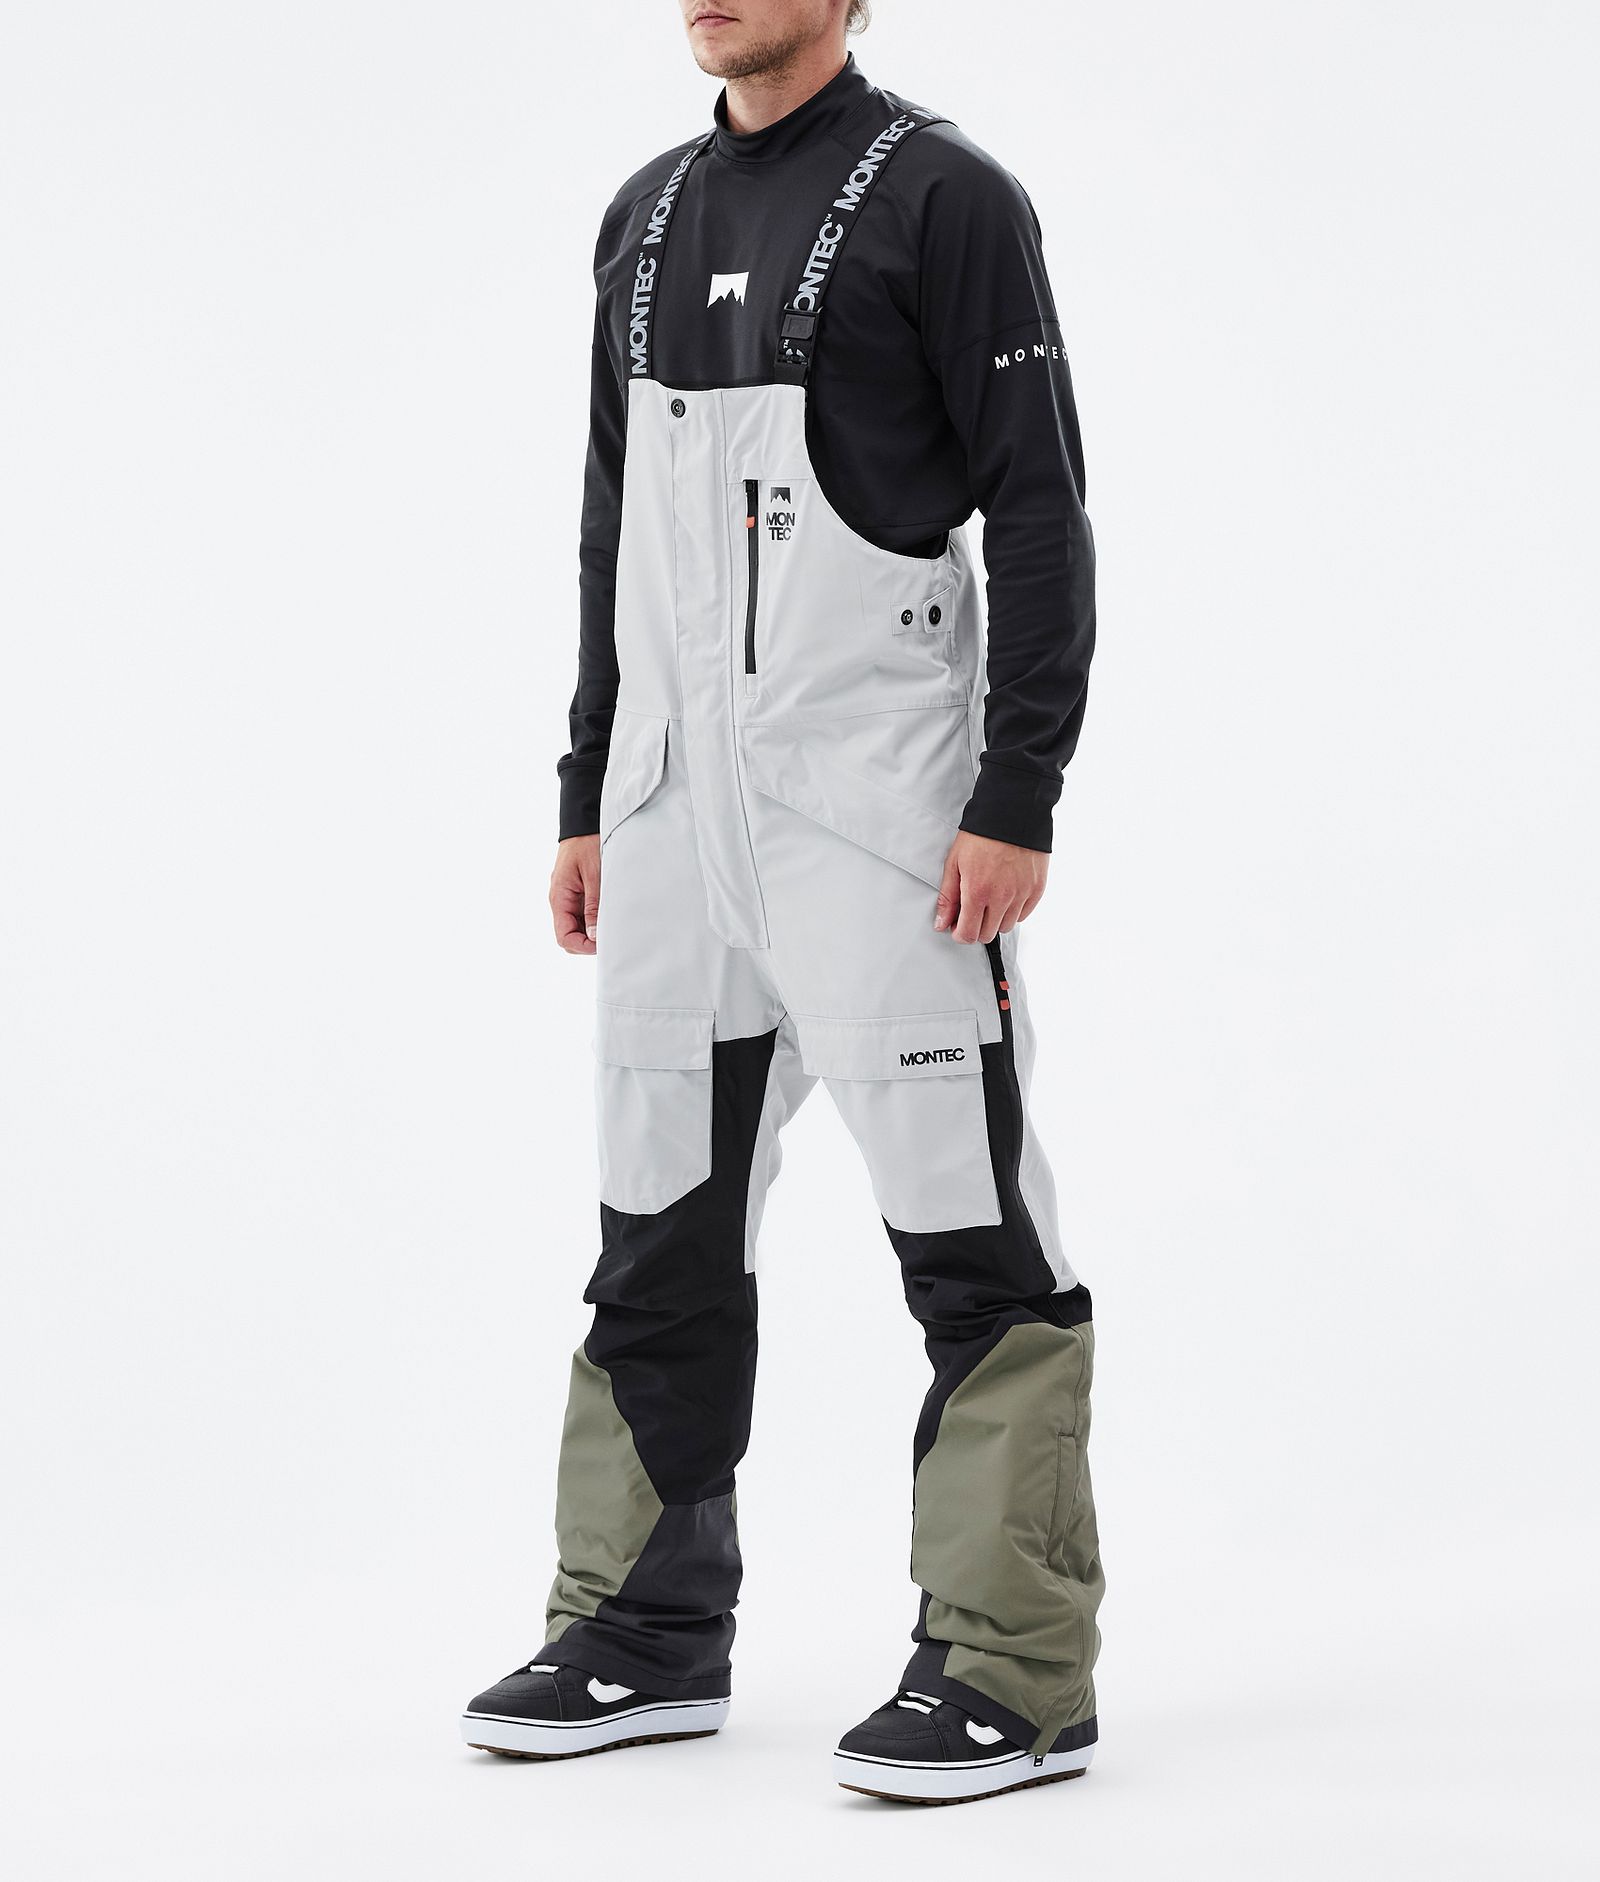 Fawk Pantalones Snowboard Hombre Light Grey/Black/Greenish